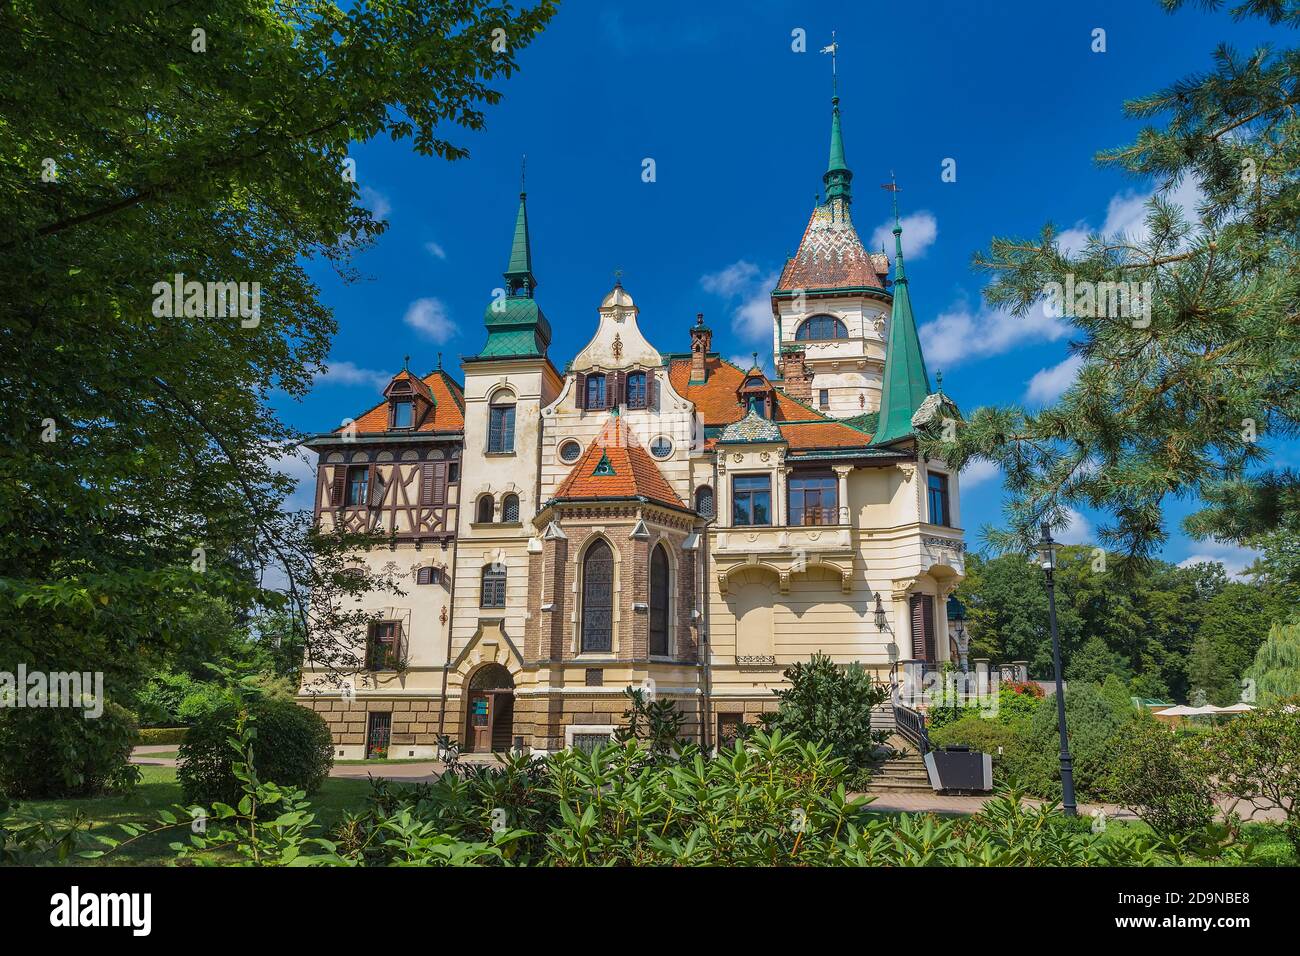 ZLIN, RÉPUBLIQUE TCHÈQUE - 14 AOÛT 2017 : le château de Lesna est l'un des plus jeunes châteaux de la République tchèque, construit à la fin du XIXe siècle Banque D'Images